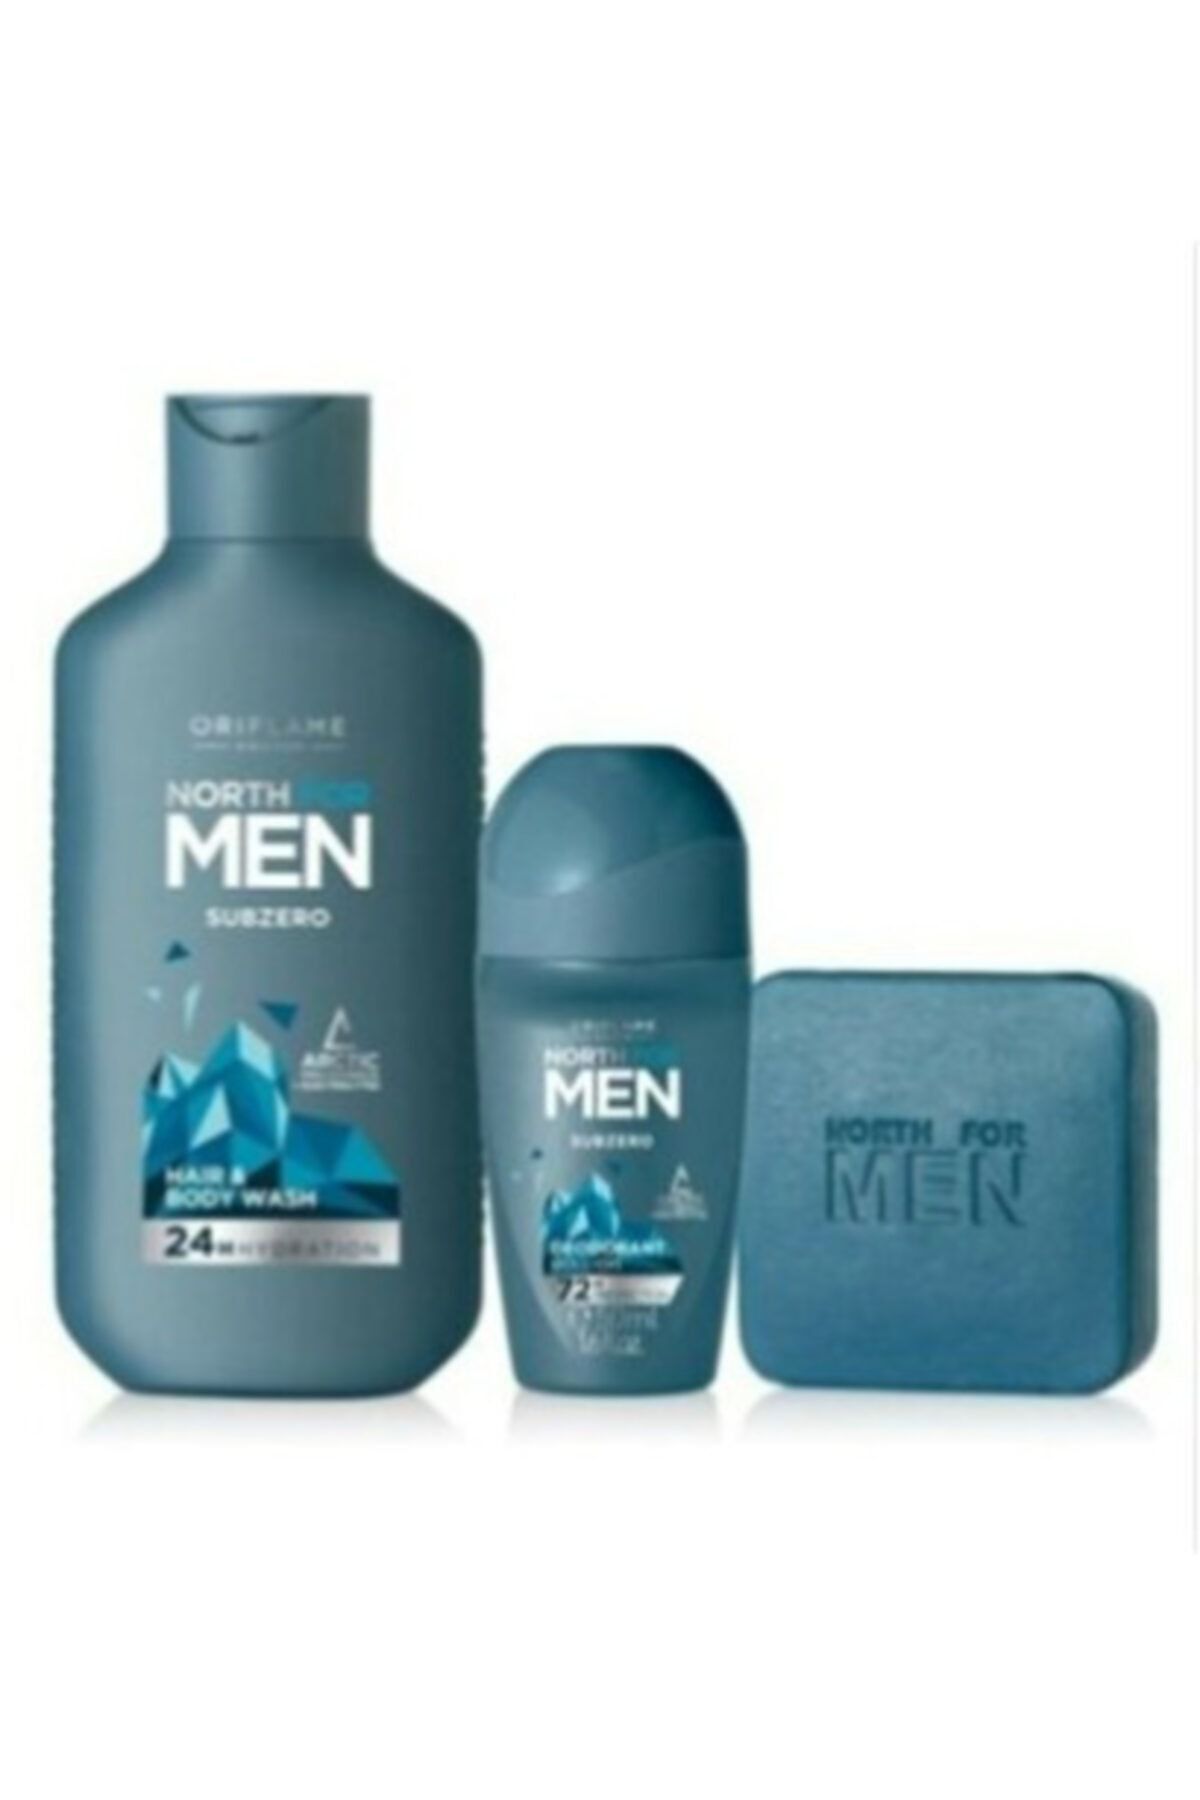 Oriflame North For Men Subzero Saç Ve Vücut Şampuanı 250 ml  + Subzero Sabun + Roll On Deodorant